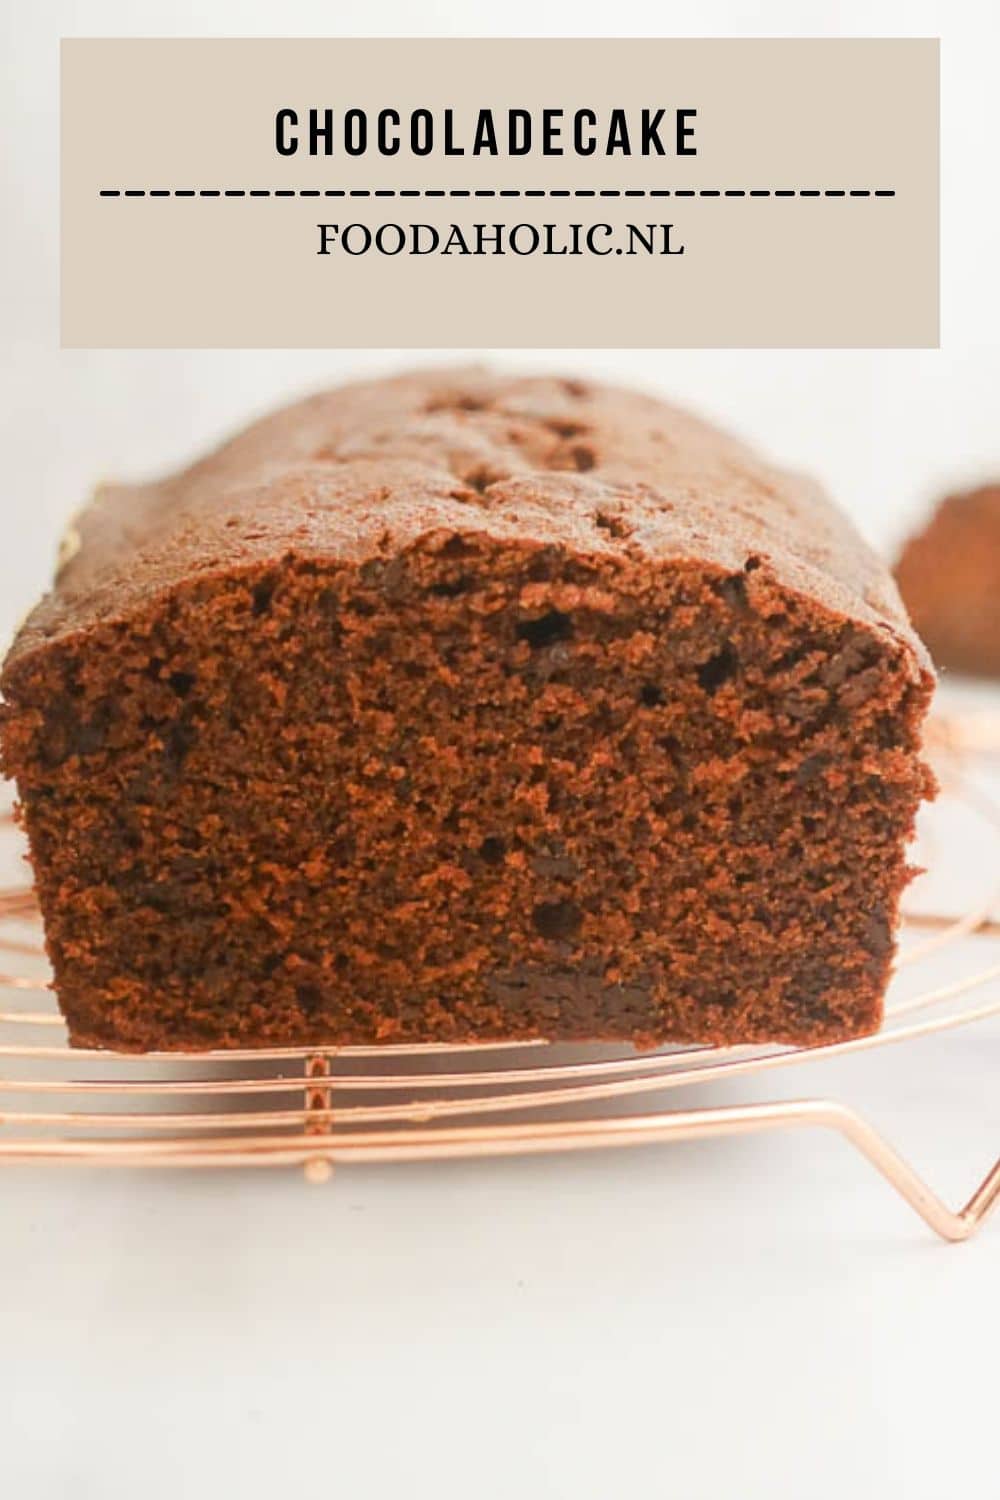 Chocoladecake - Pinterest | Foodaholic.nl